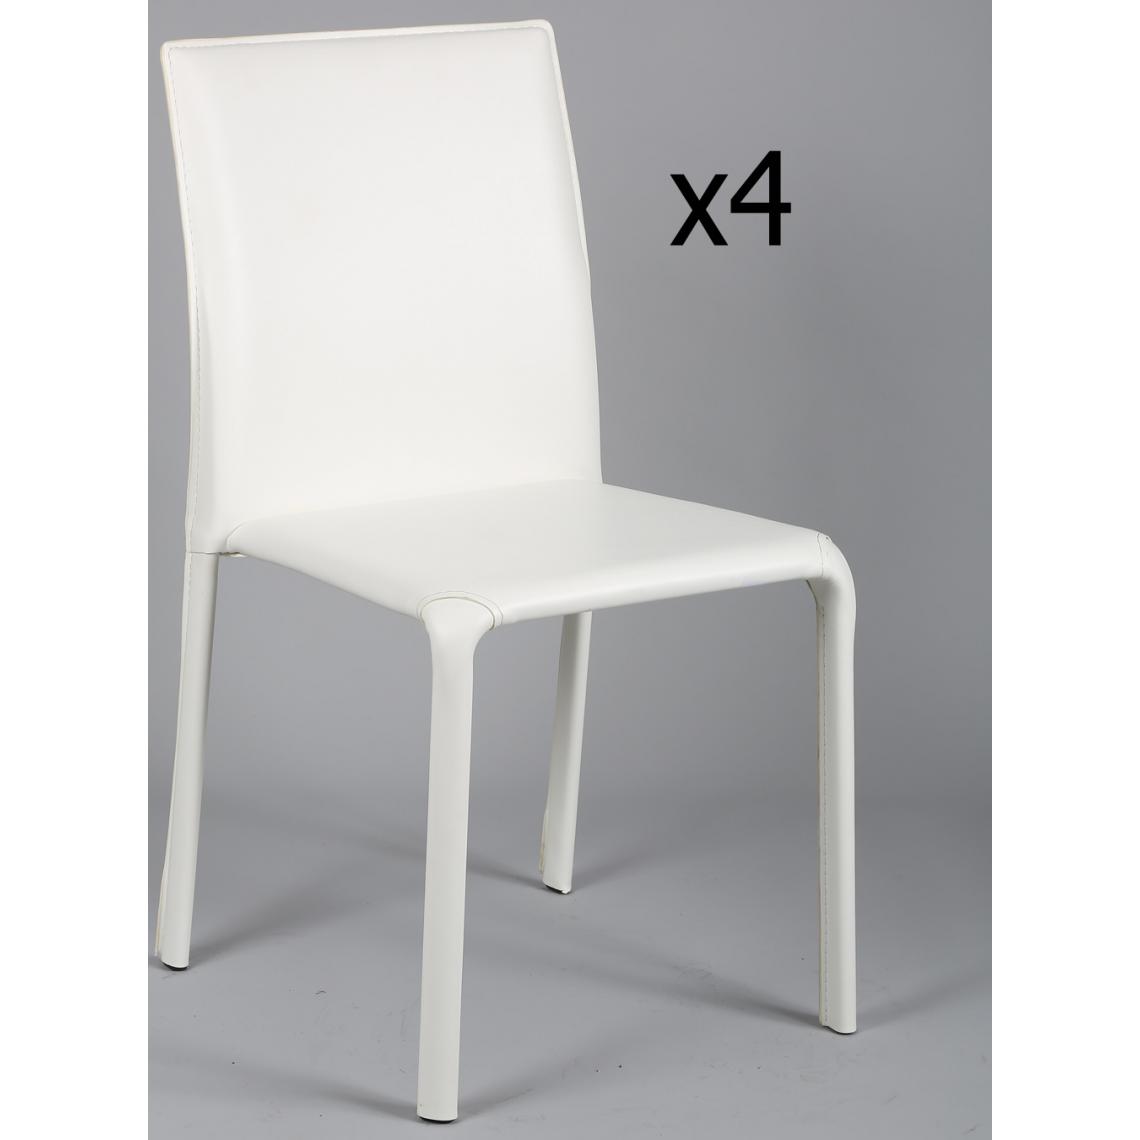 Pegane - Lot de 4 chaises en métal, recouverte de PVC blanc - Ht. 830 x Ht. Ass 450 x L 460 x l 550 mm -PEGANE- - Chaises